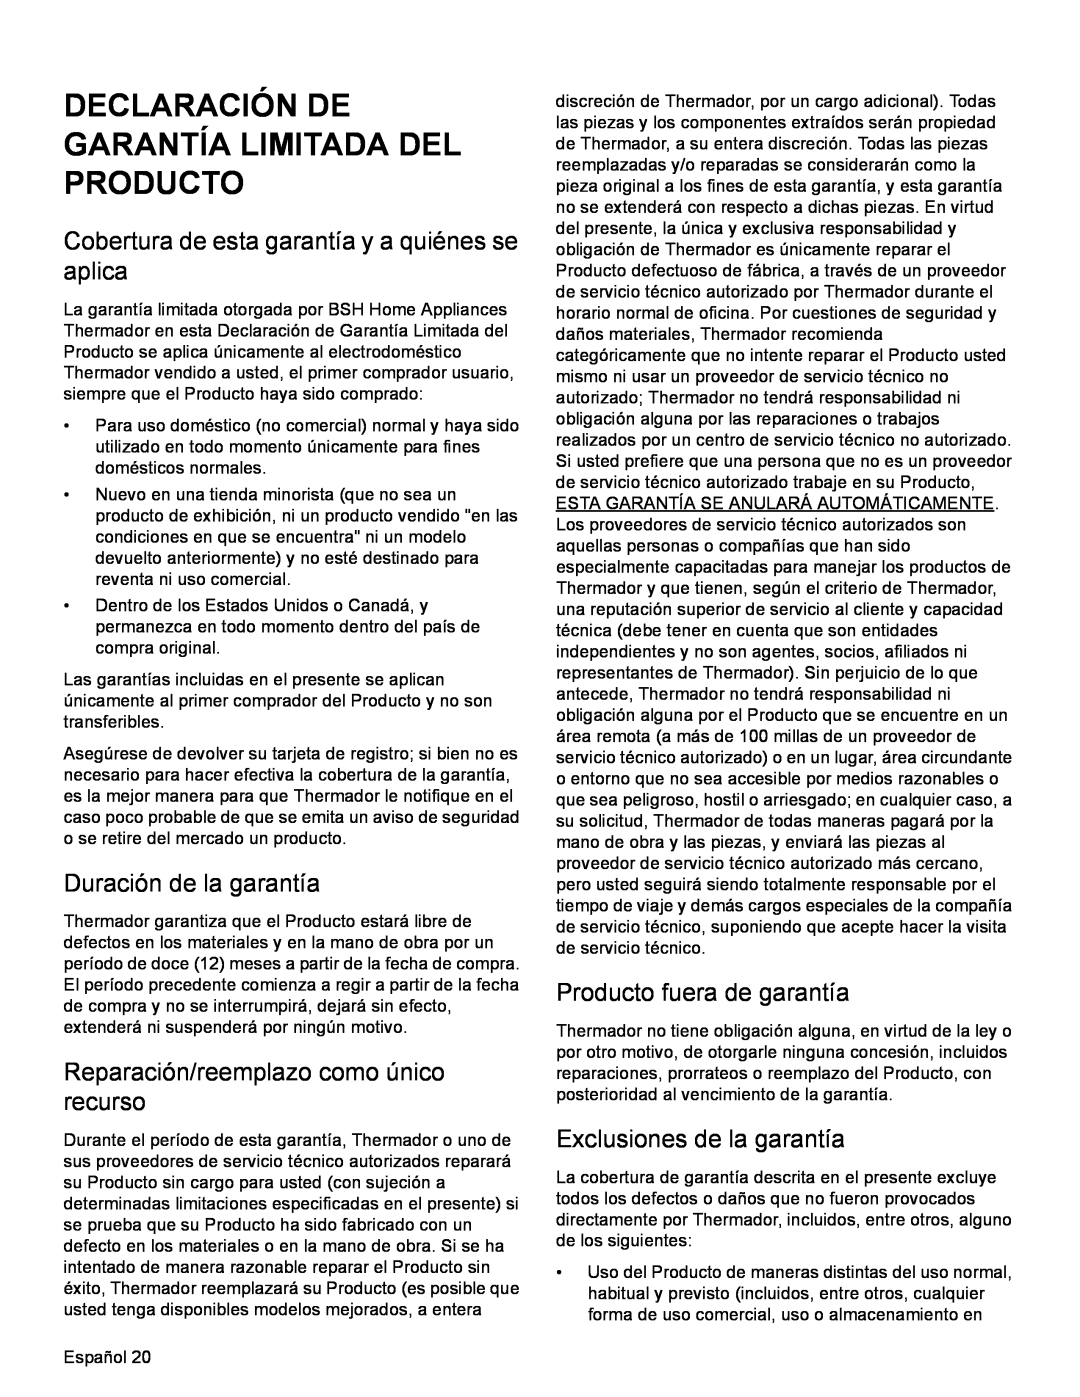 Bosch Appliances SGSX Declaración De Garantía Limitada Del Producto, Cobertura de esta garantía y a quiénes se aplica 